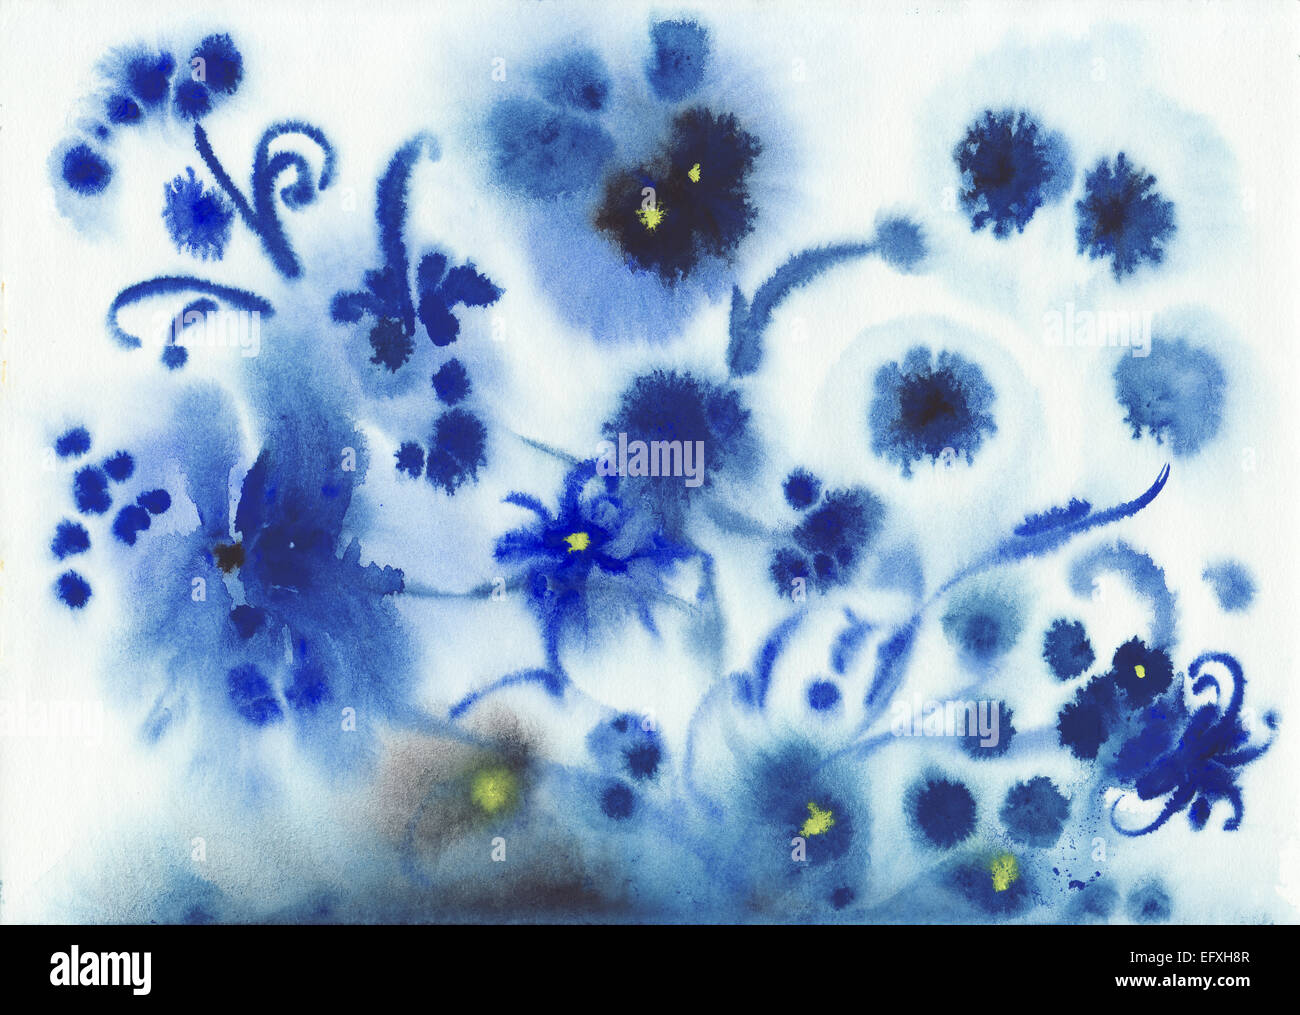 Aquarelle originale de fleurs aquarelle humide bleu abstrait Banque D'Images